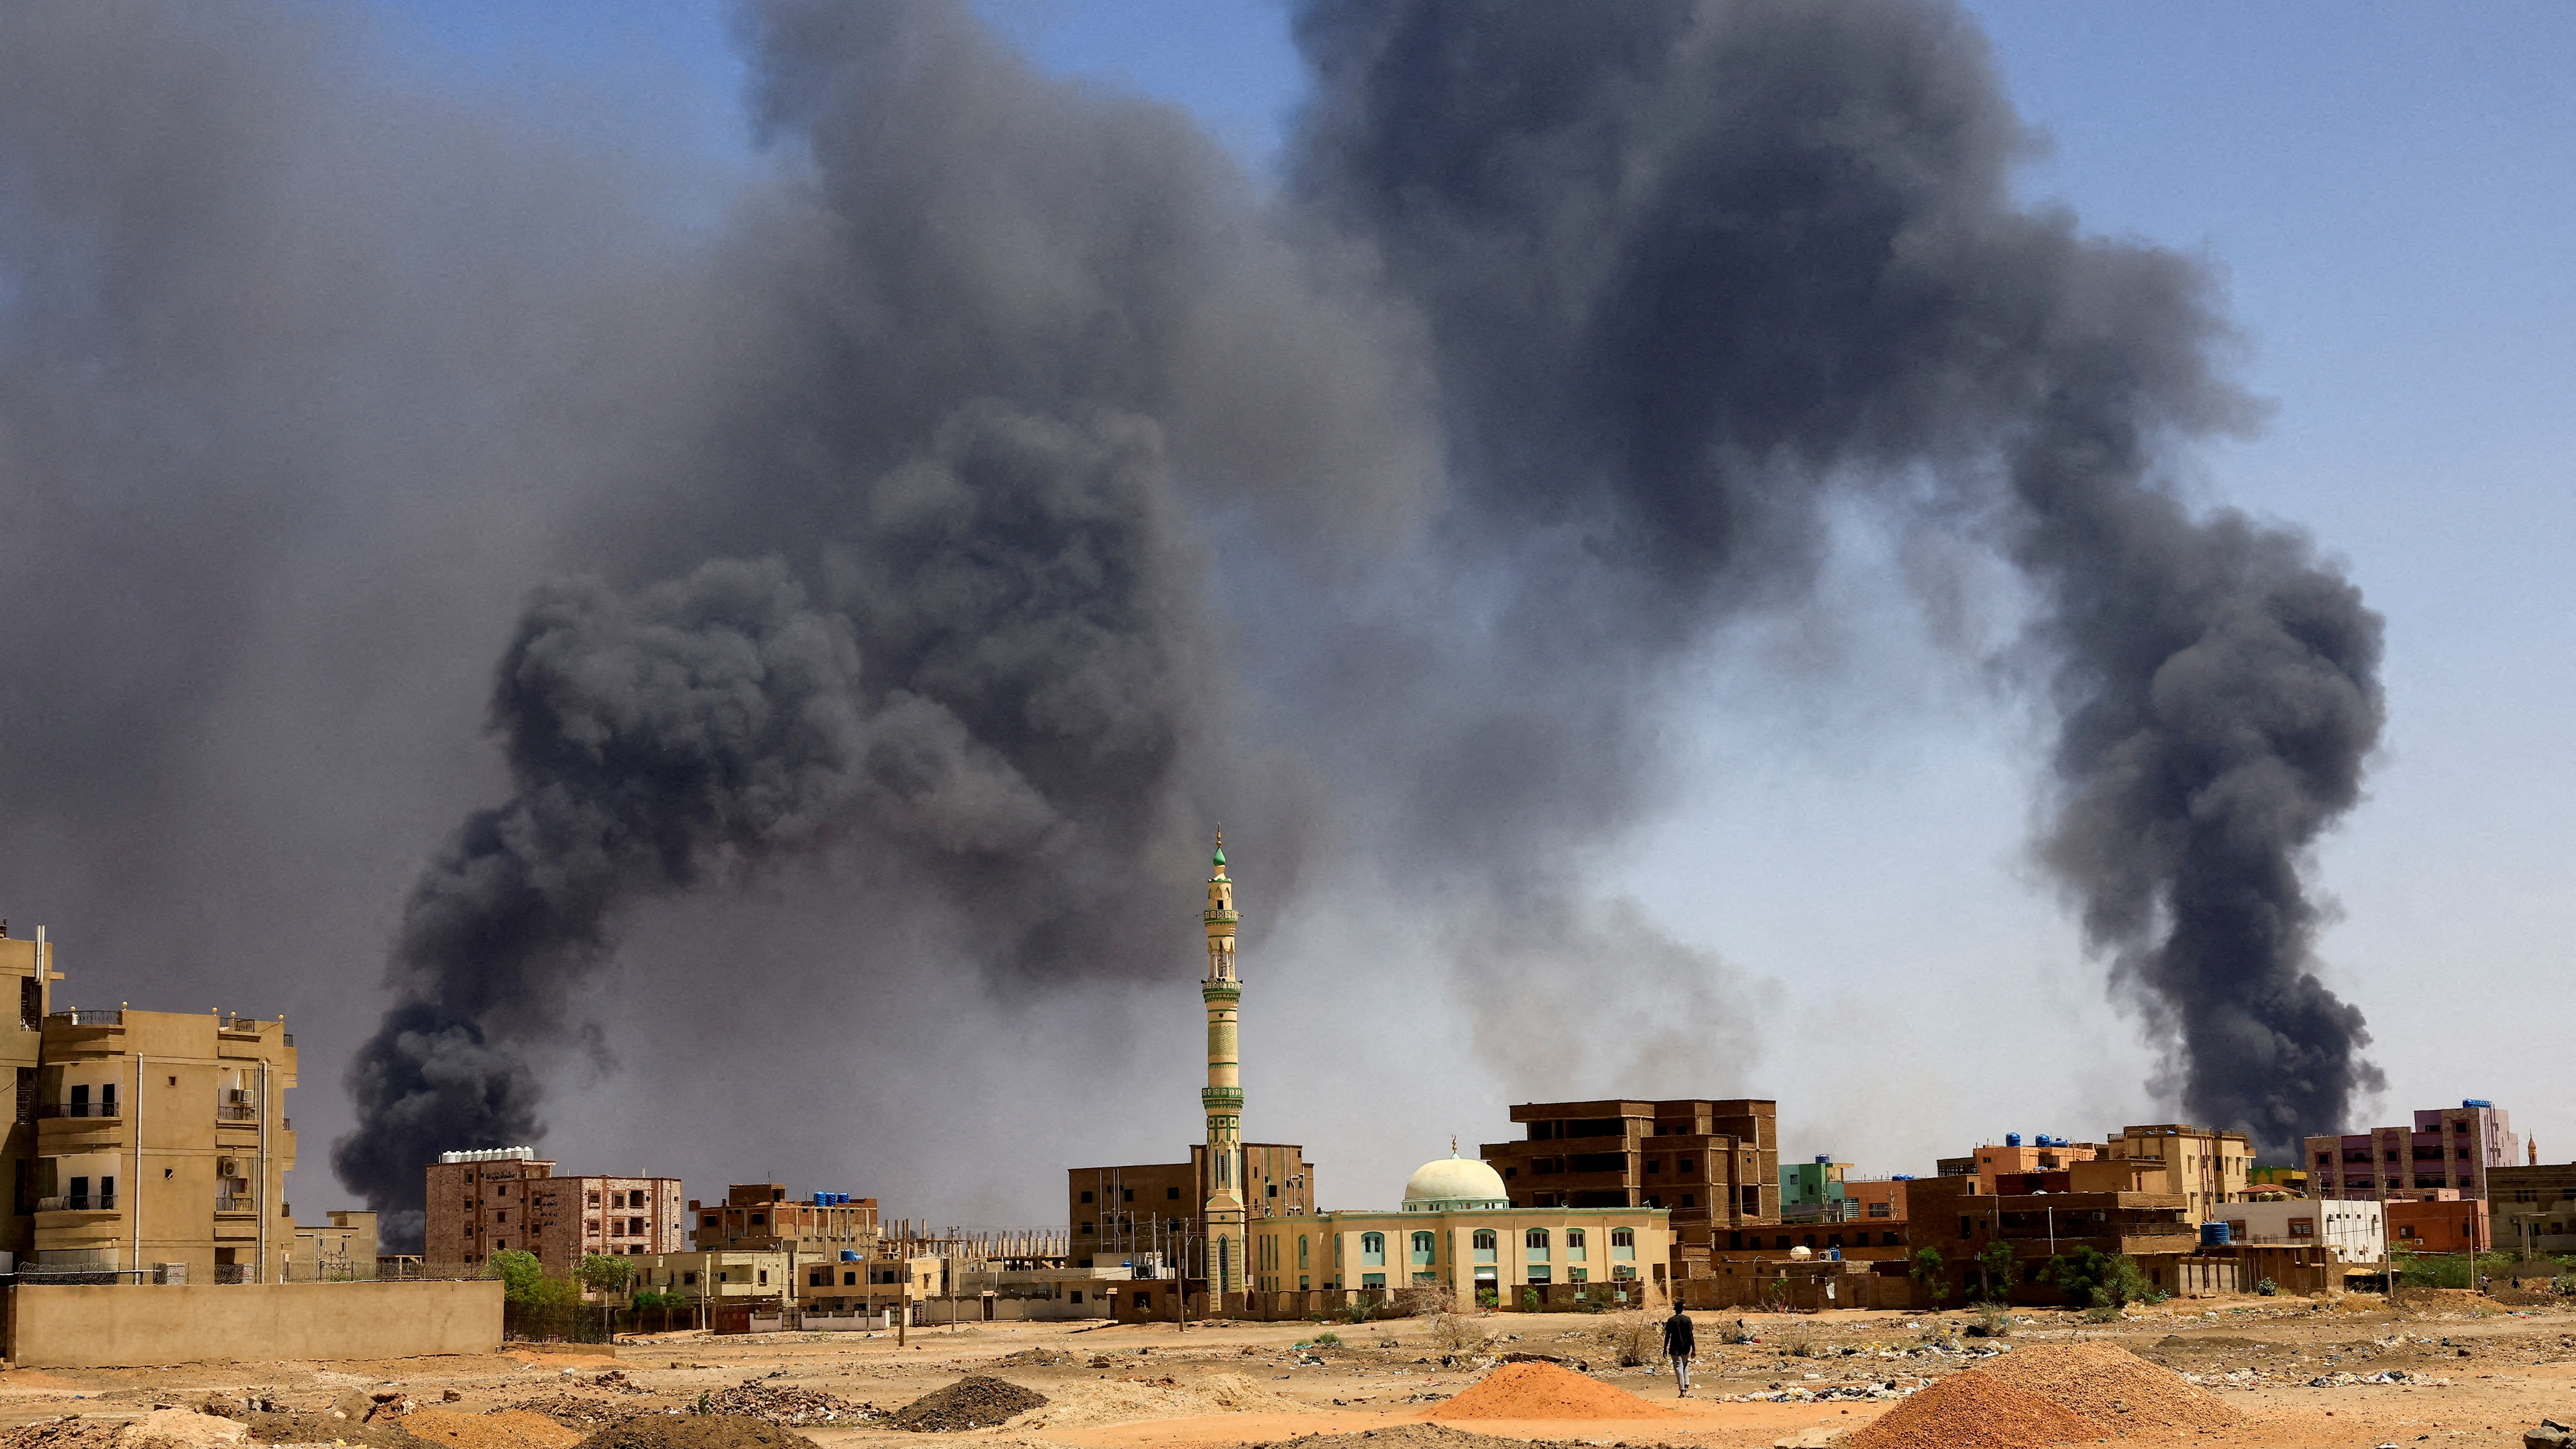 Violencia en Sudán: el ejército y los rebeldes acordaron corredores humanitarios pero siguen los enfrentamientos